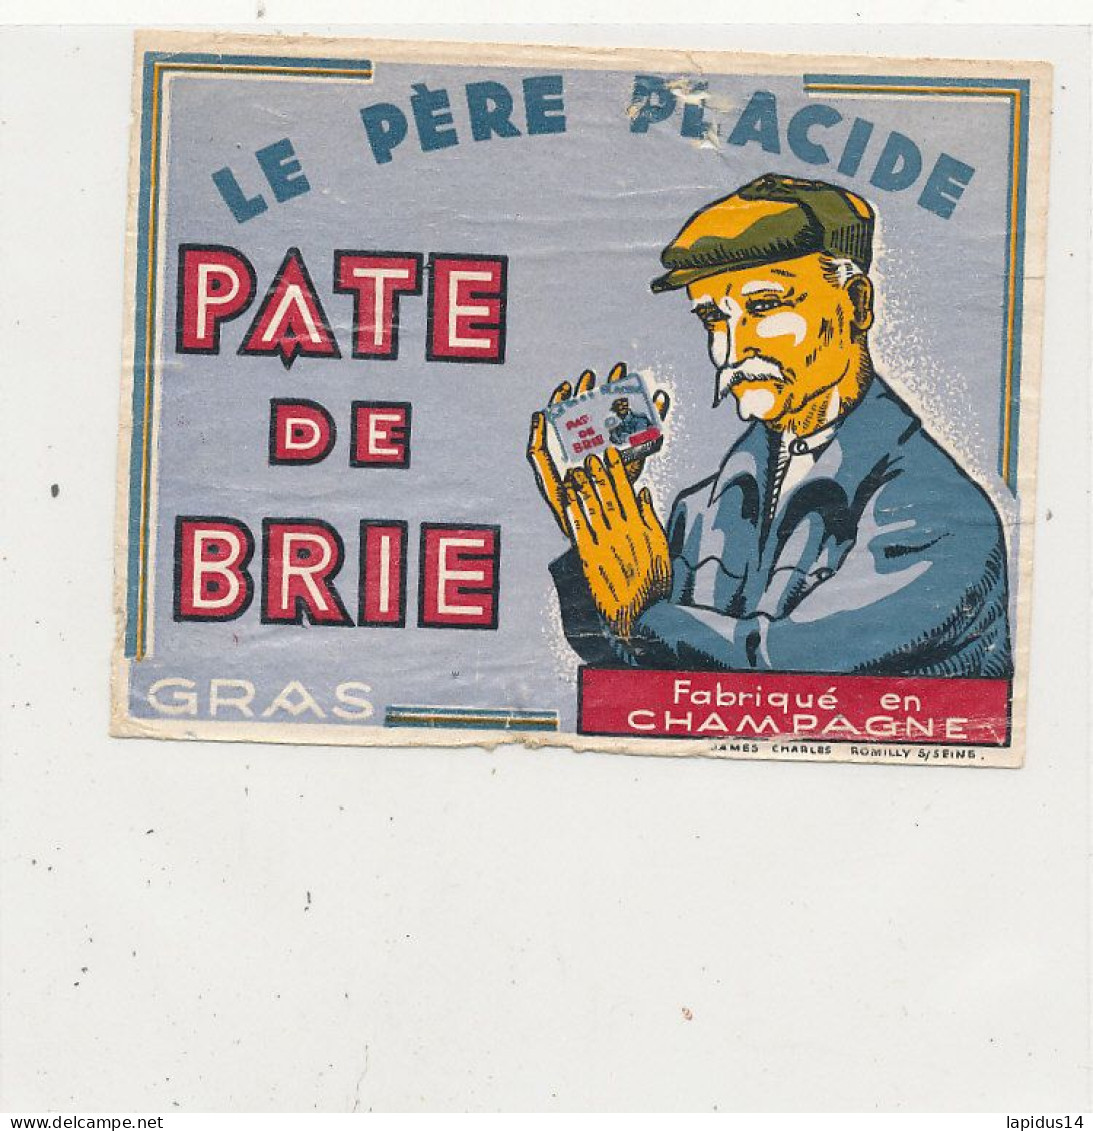 GG 445  / ETIQUETTE FROMAGE  PATE  DE BRIE -LE PERE PLACIDE  FABRIQUE EN CHAMPAGNE - Cheese